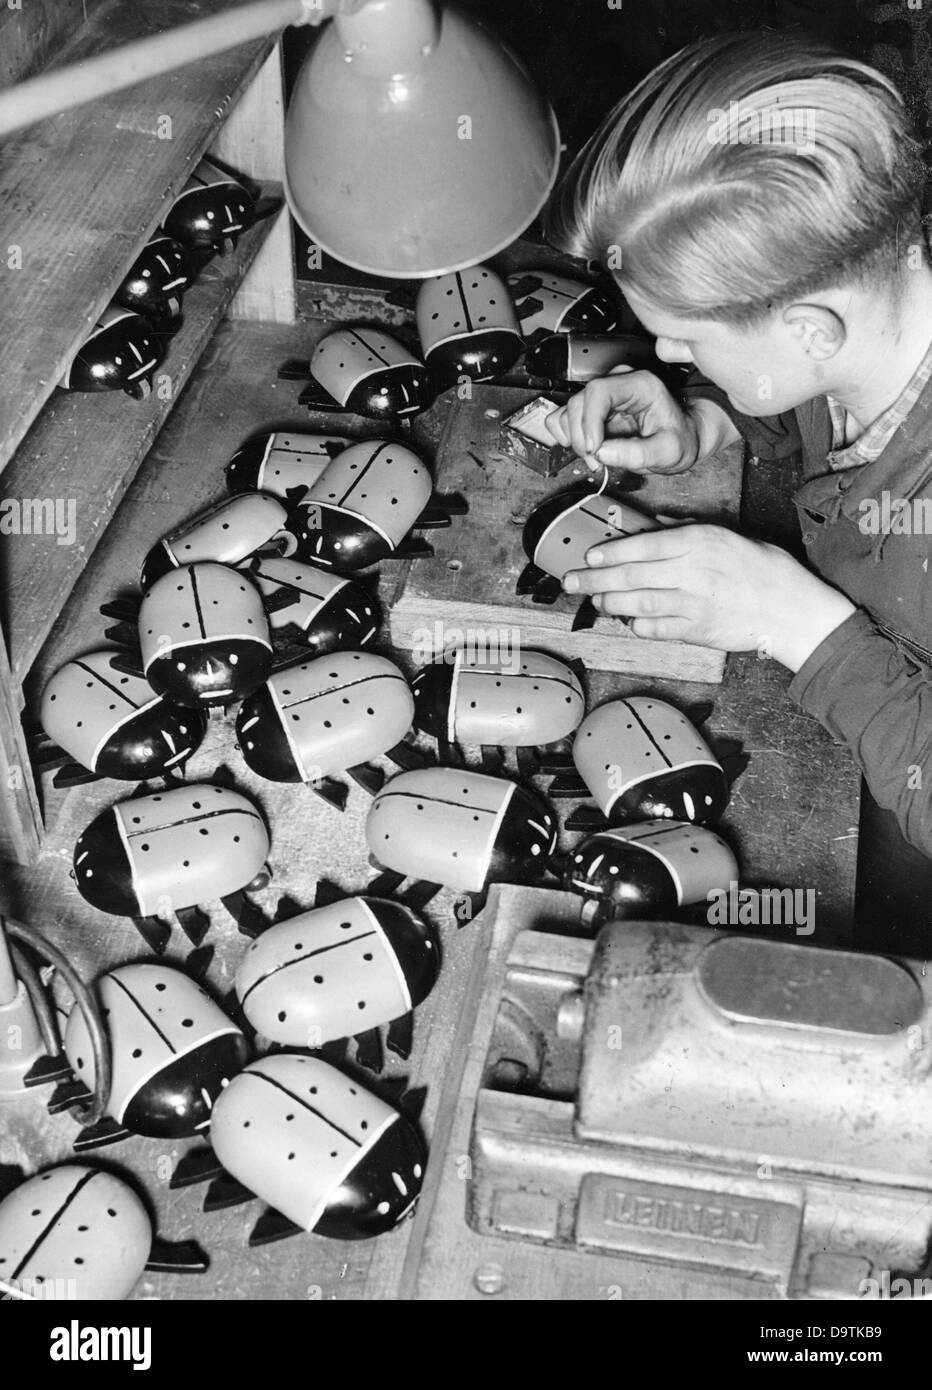 Les jeunes garçons d'Hitler produisent des jouets pour Noël, en novembre 1942, dans une usine d'armement, pour le service de guerre de la Jeunesse d'Hitler. Fotoarchiv für Zeitgeschichte Banque D'Images